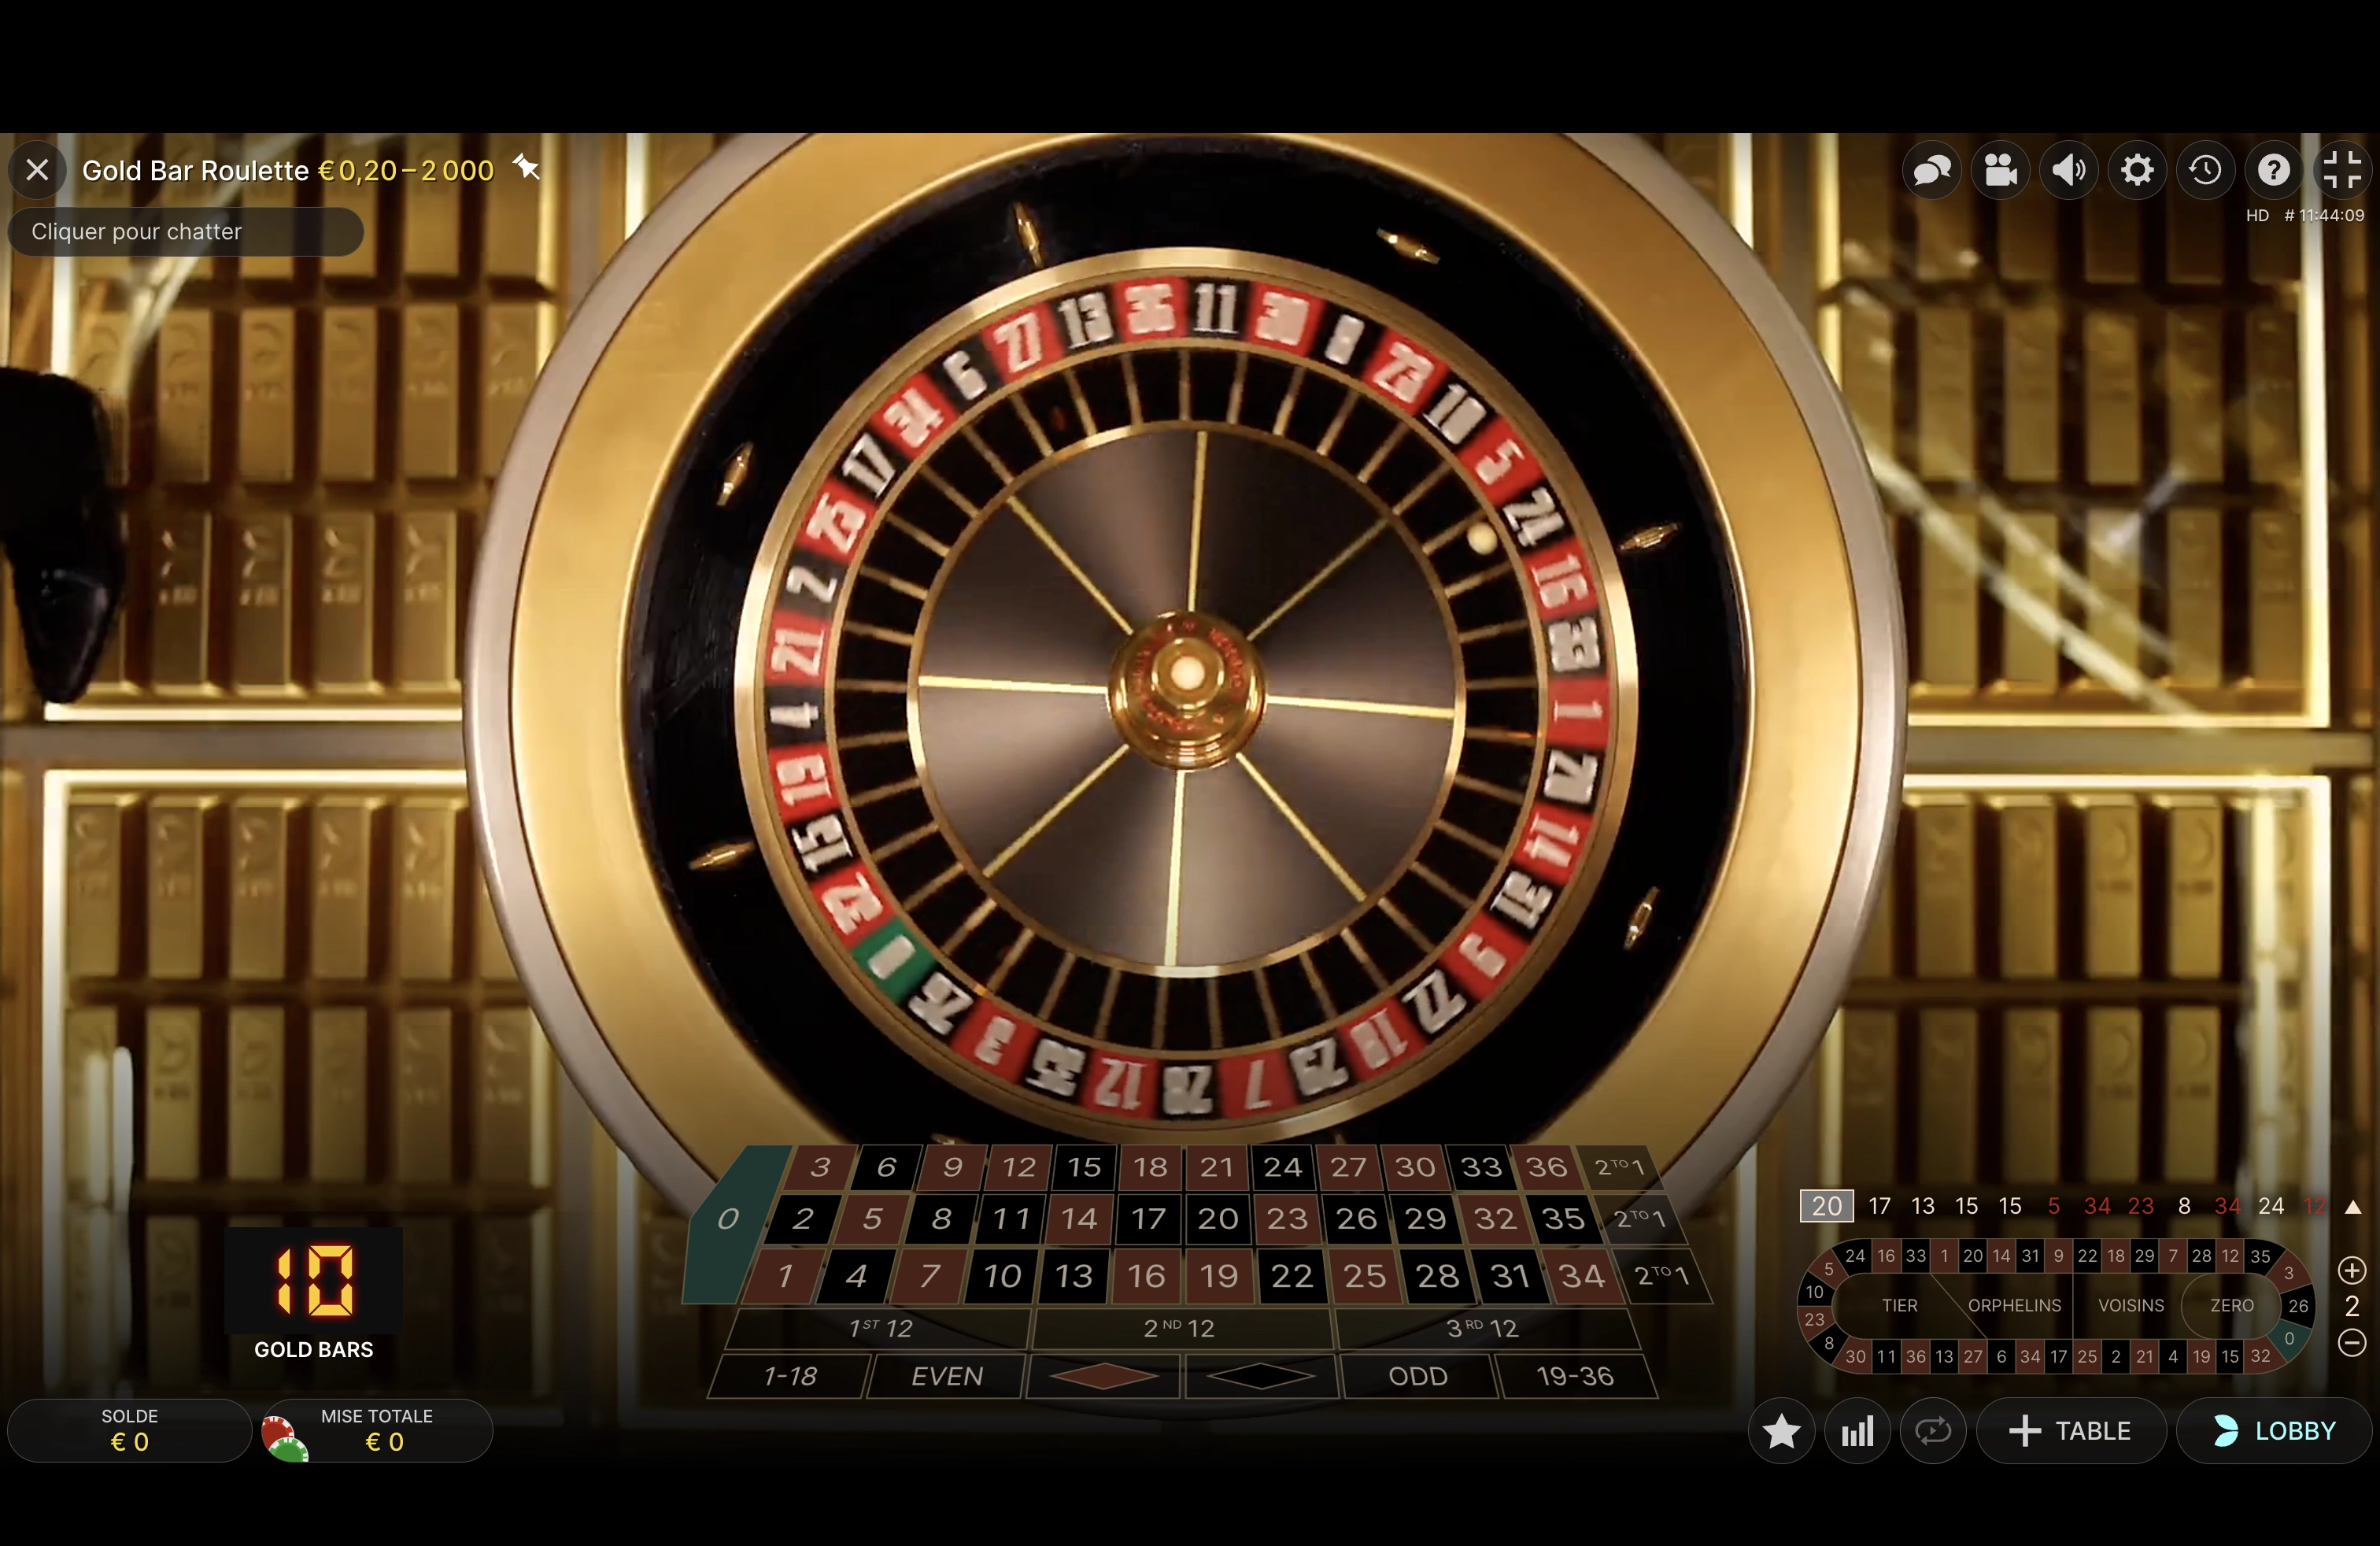 Explication dâ€™un tour classique de la roulette Gold Bar Roulette du provider Evolution Gaming